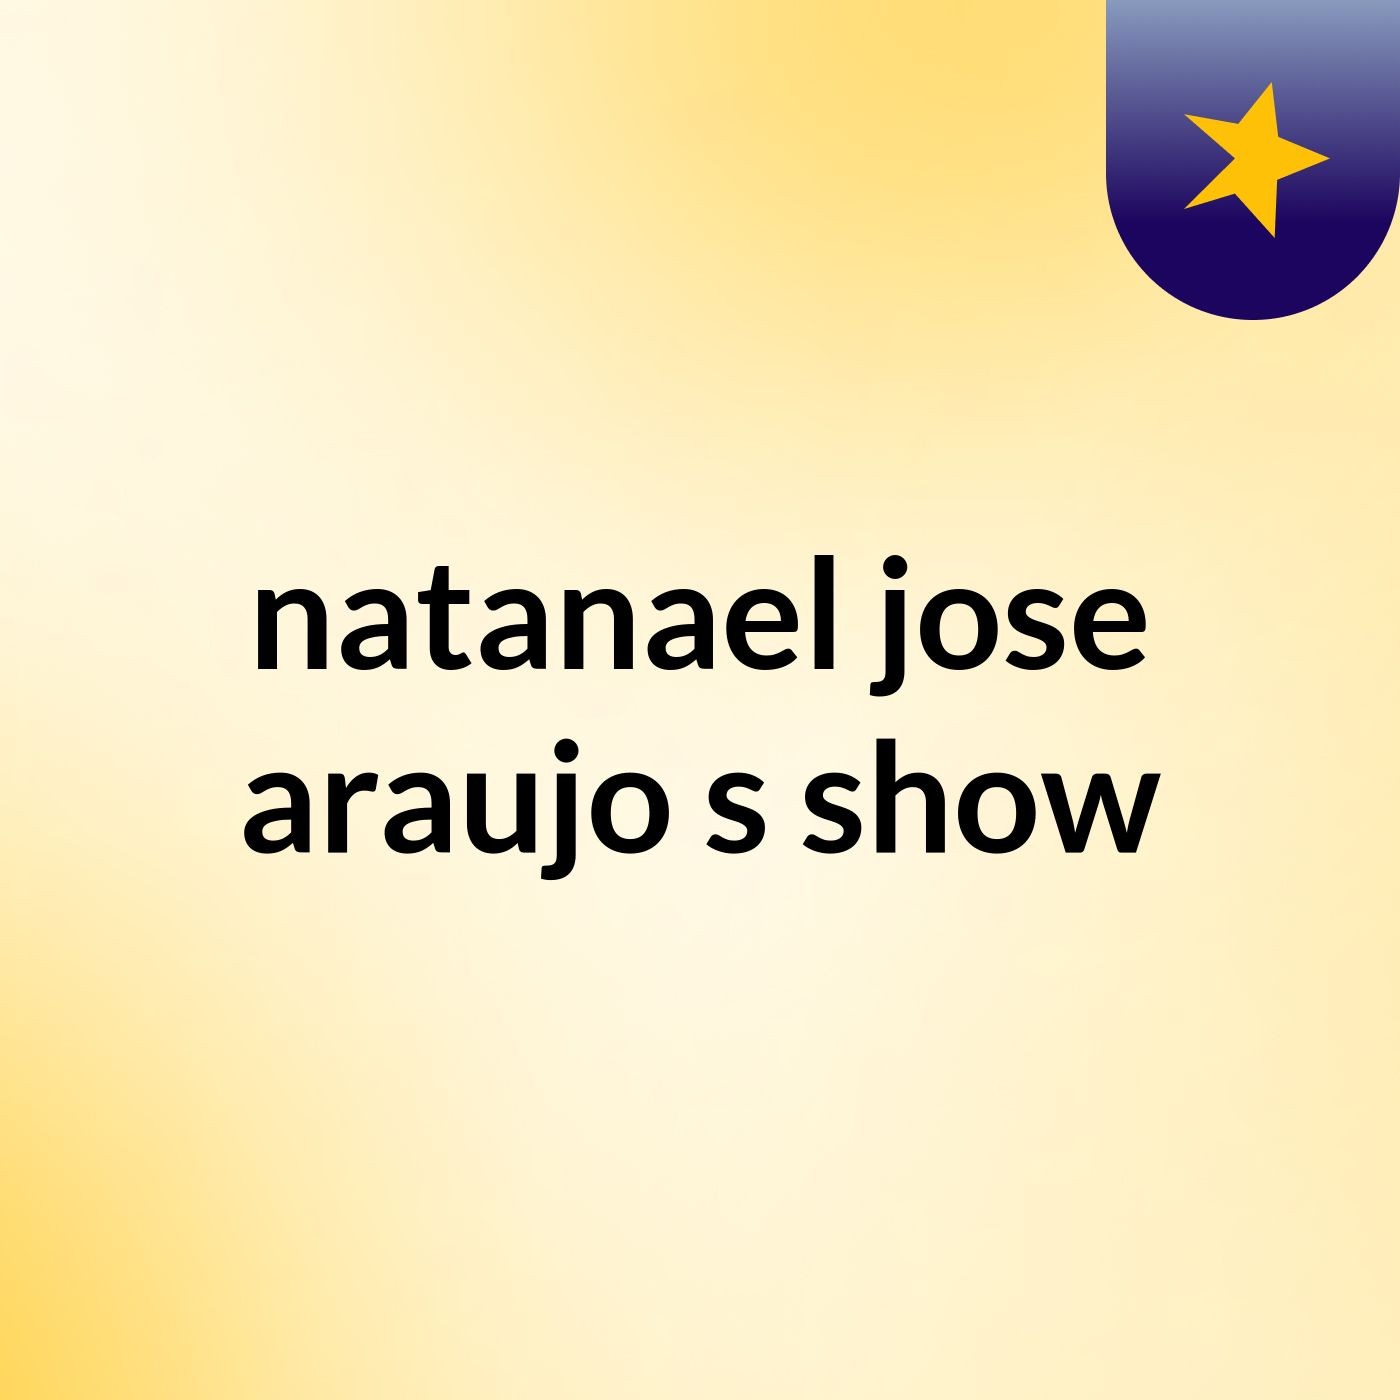 natanael jose araujo's show